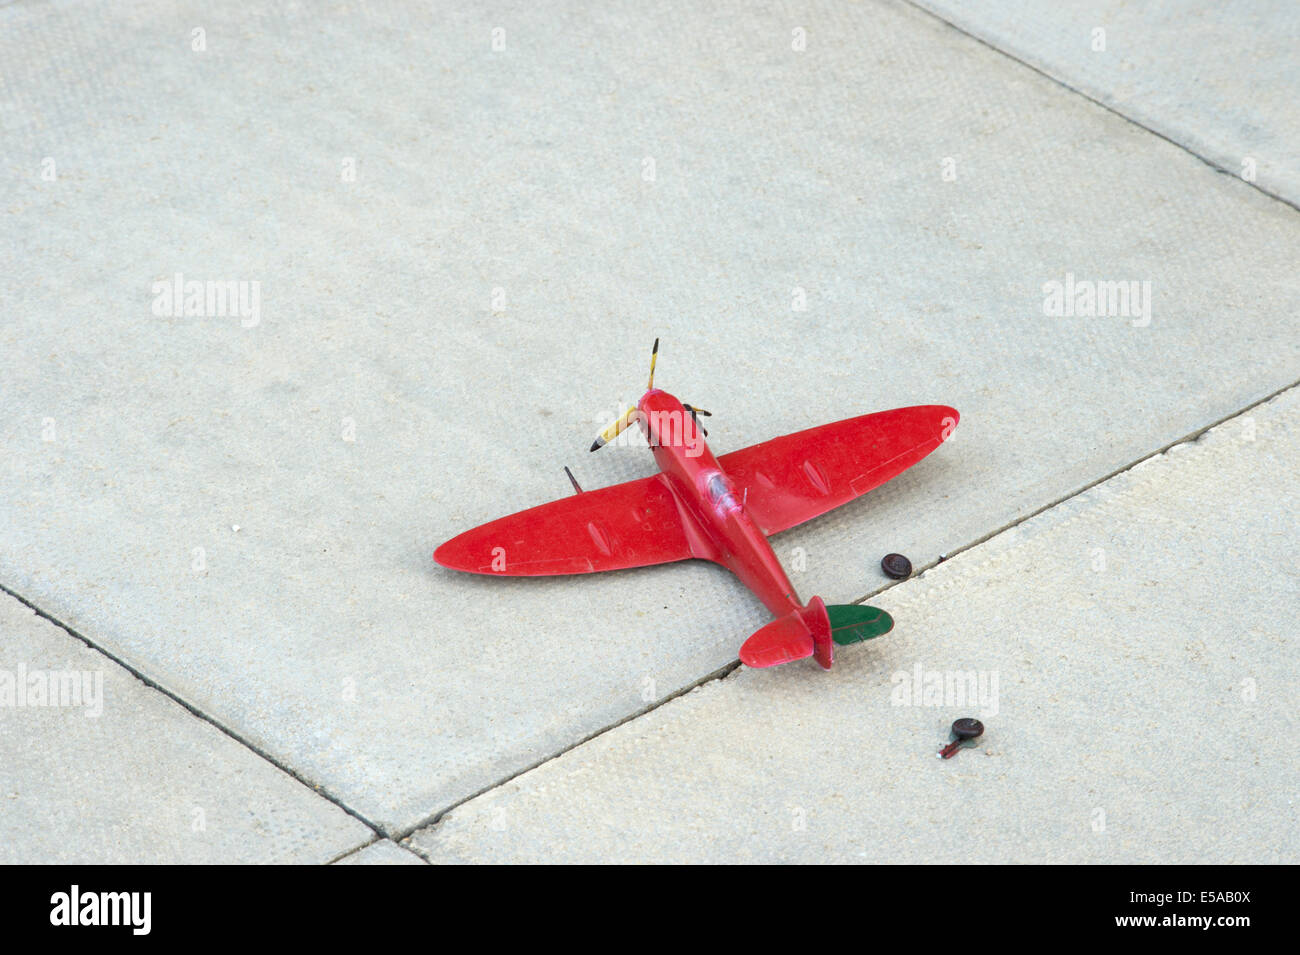 gebrochene rot Spielzeug Spitfire Flugzeug Flugzeuge verwerfen ebnet Platte Fahrwerk abgerissen Stockfoto